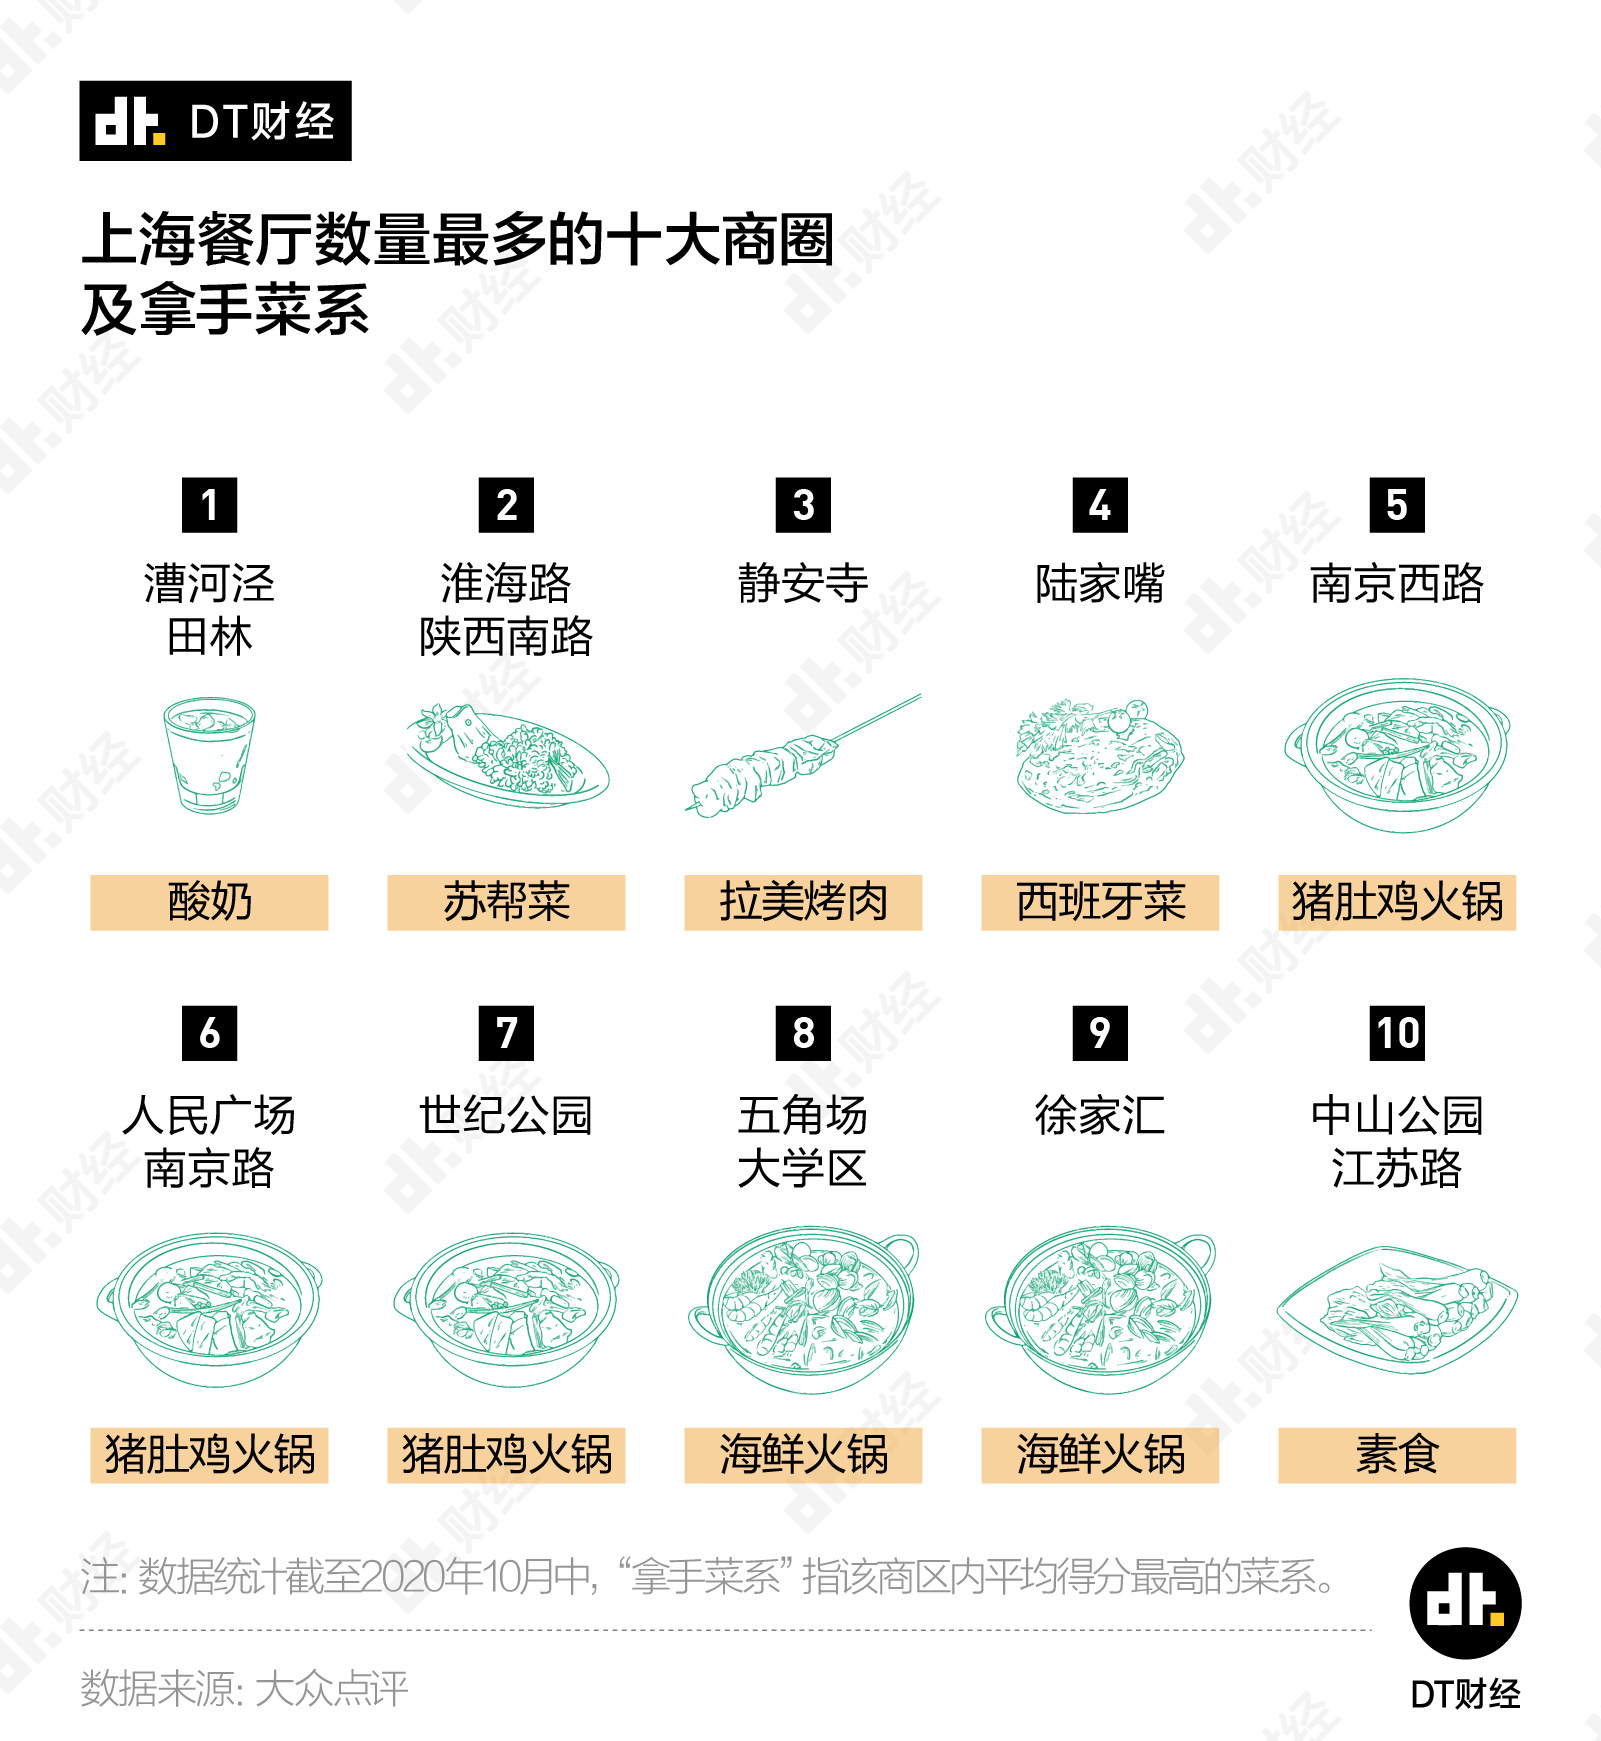 上海点评网_大众点评网上海一号私房菜订餐_点评网 上海